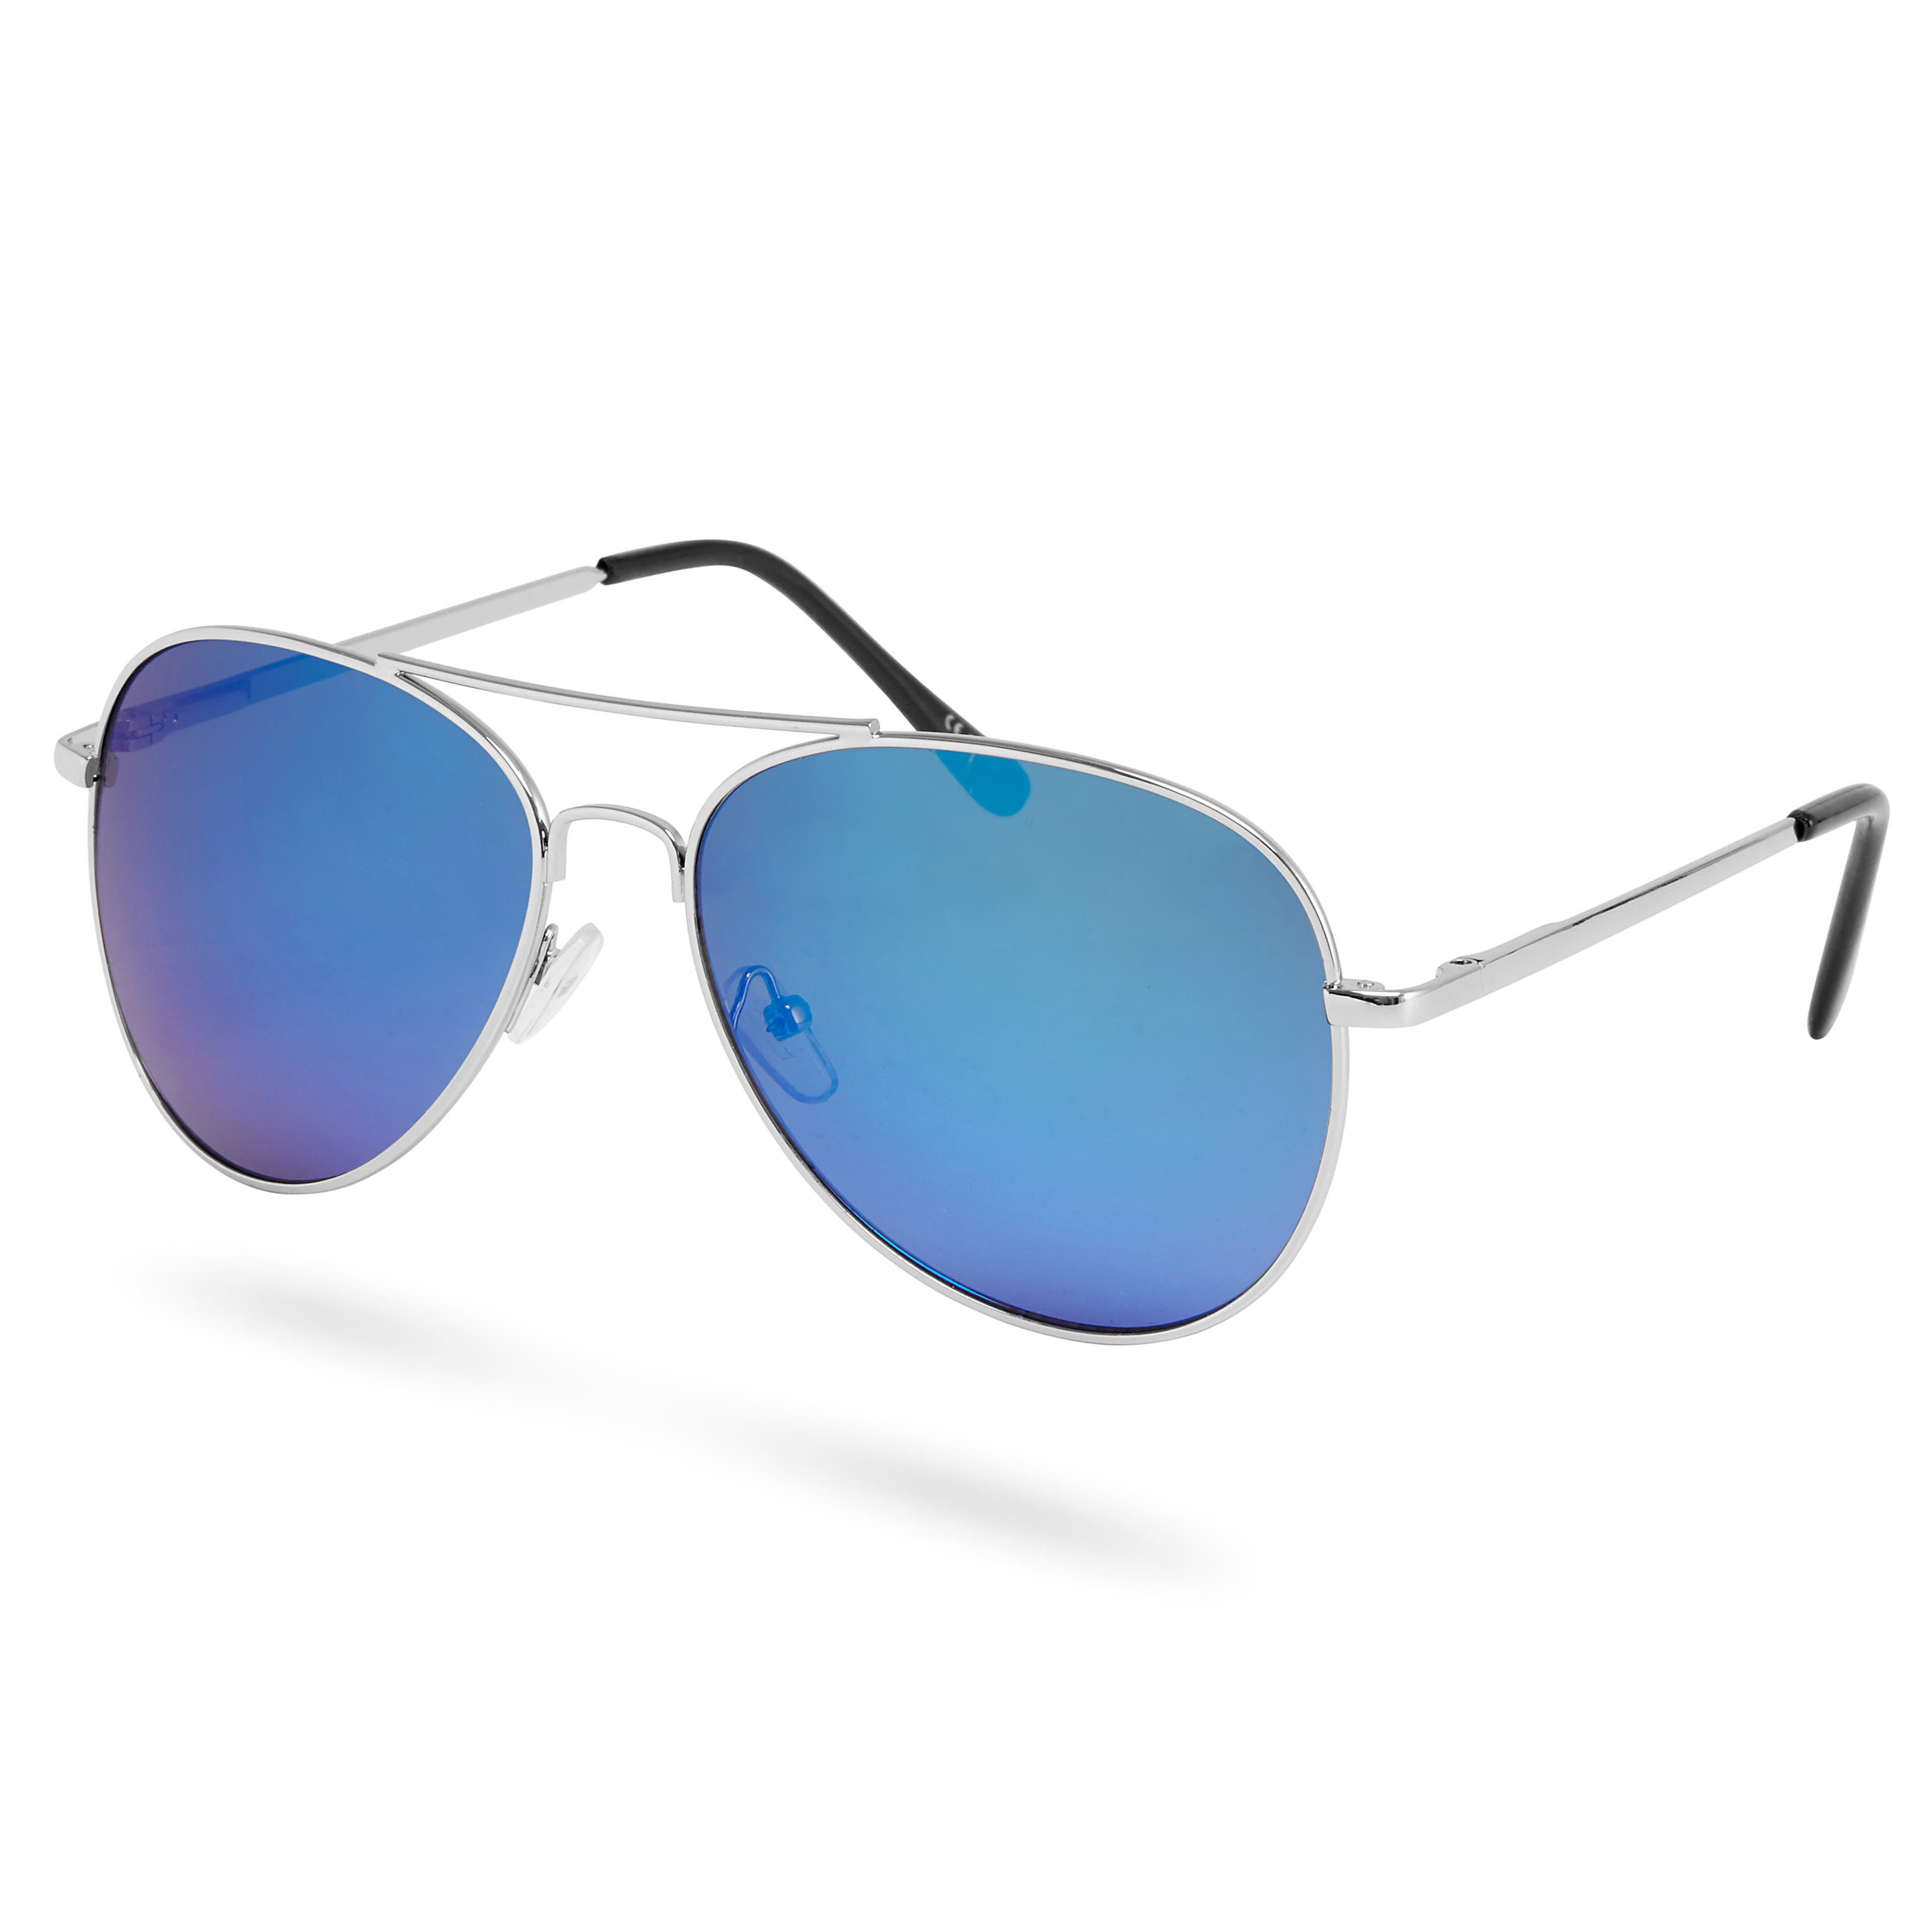 Gafas de sol aviator de espejo en plateado y azul